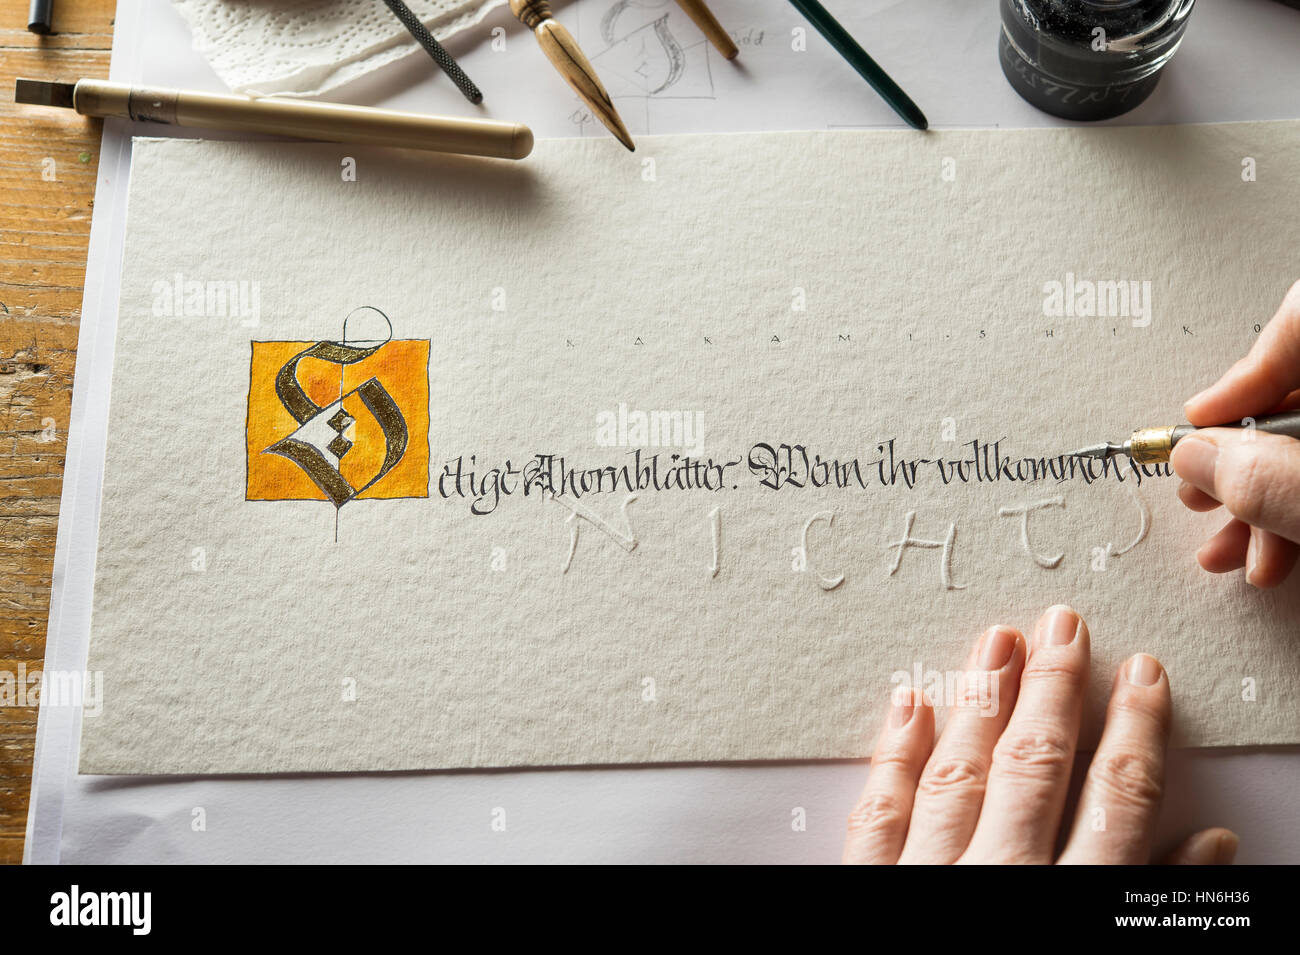 Studio de calligraphie, part écrit le texte avec un stylo et plume, lettre S de poudre d'or sur papier torchon, part visible de gaufrage Banque D'Images